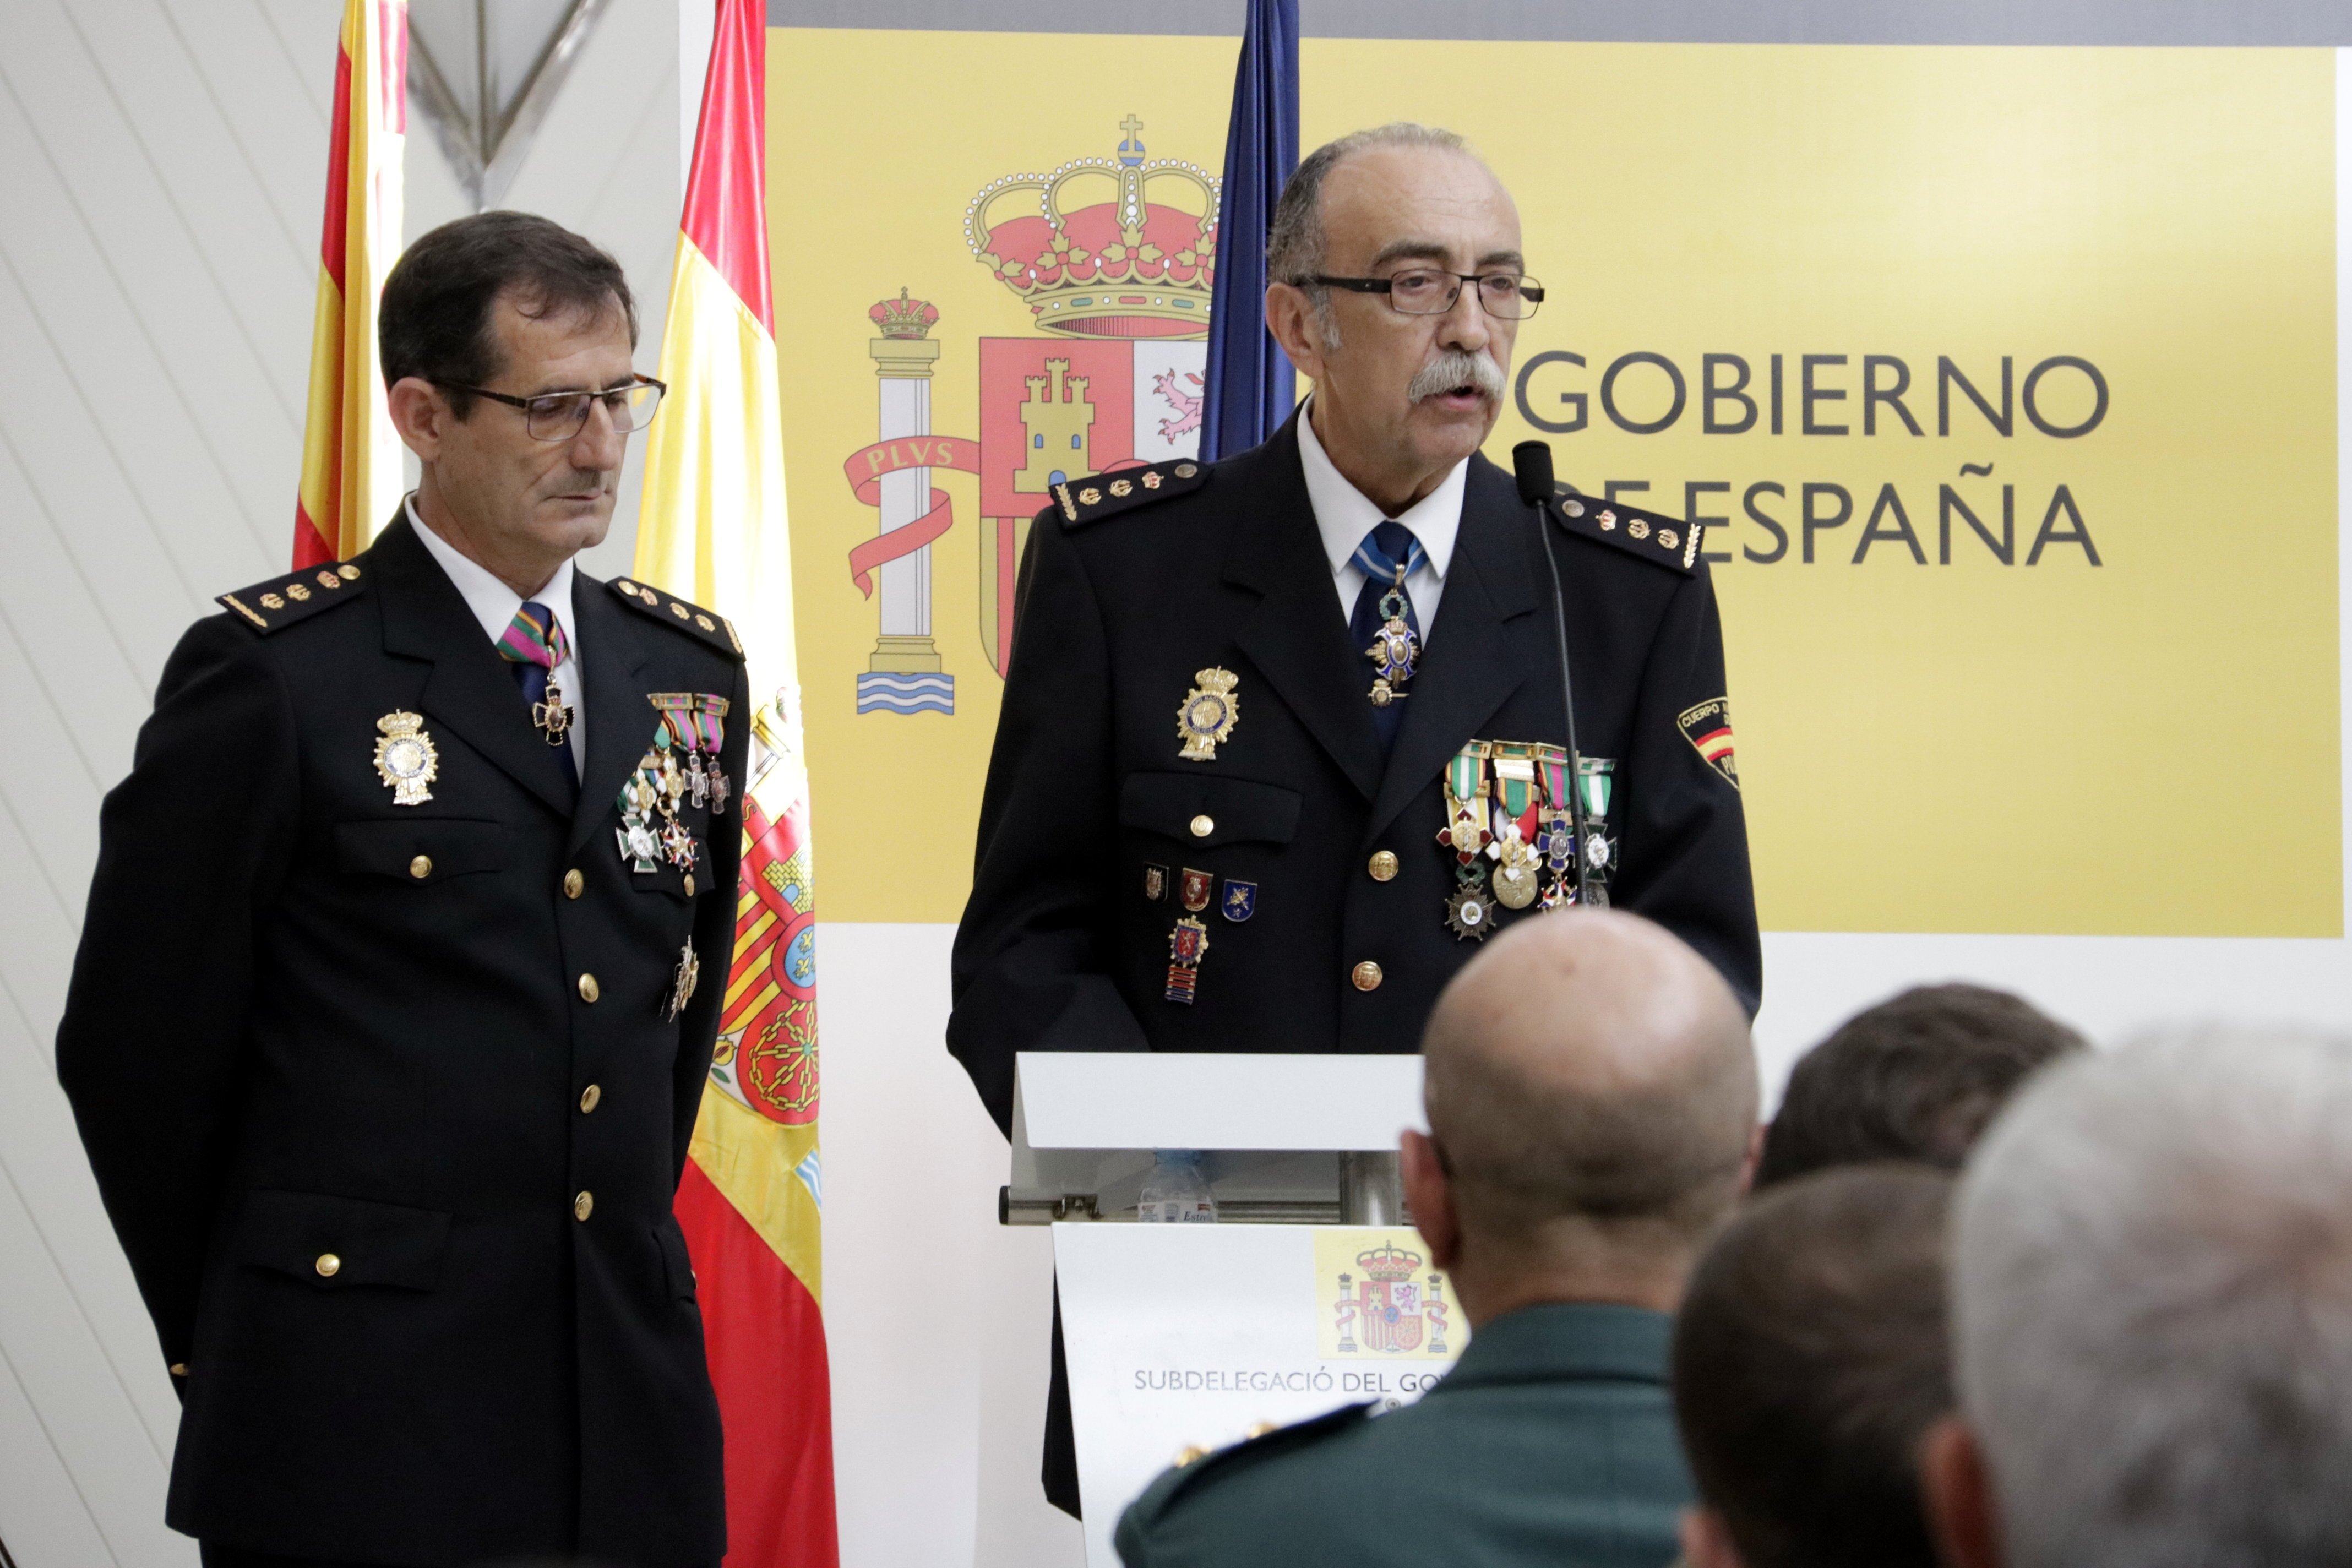 ¿Crees que el Cuerpo Nacional de Policía (CNP) se tiene que retirar de Catalunya?